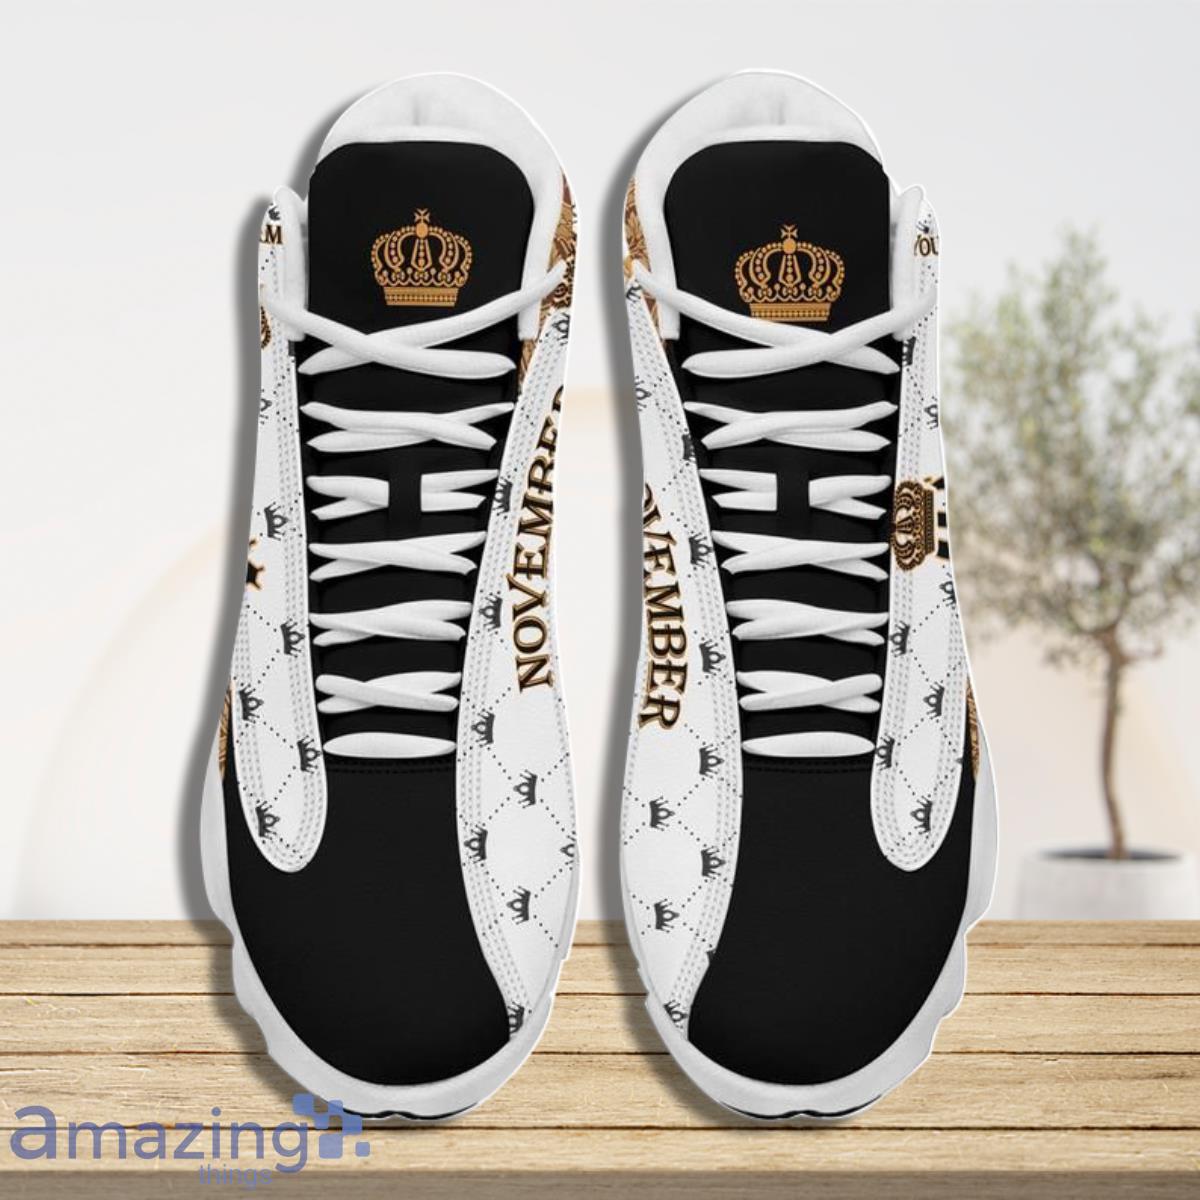 Custom Name Queen Are Born In September Shoes Sneakers Air Jordan